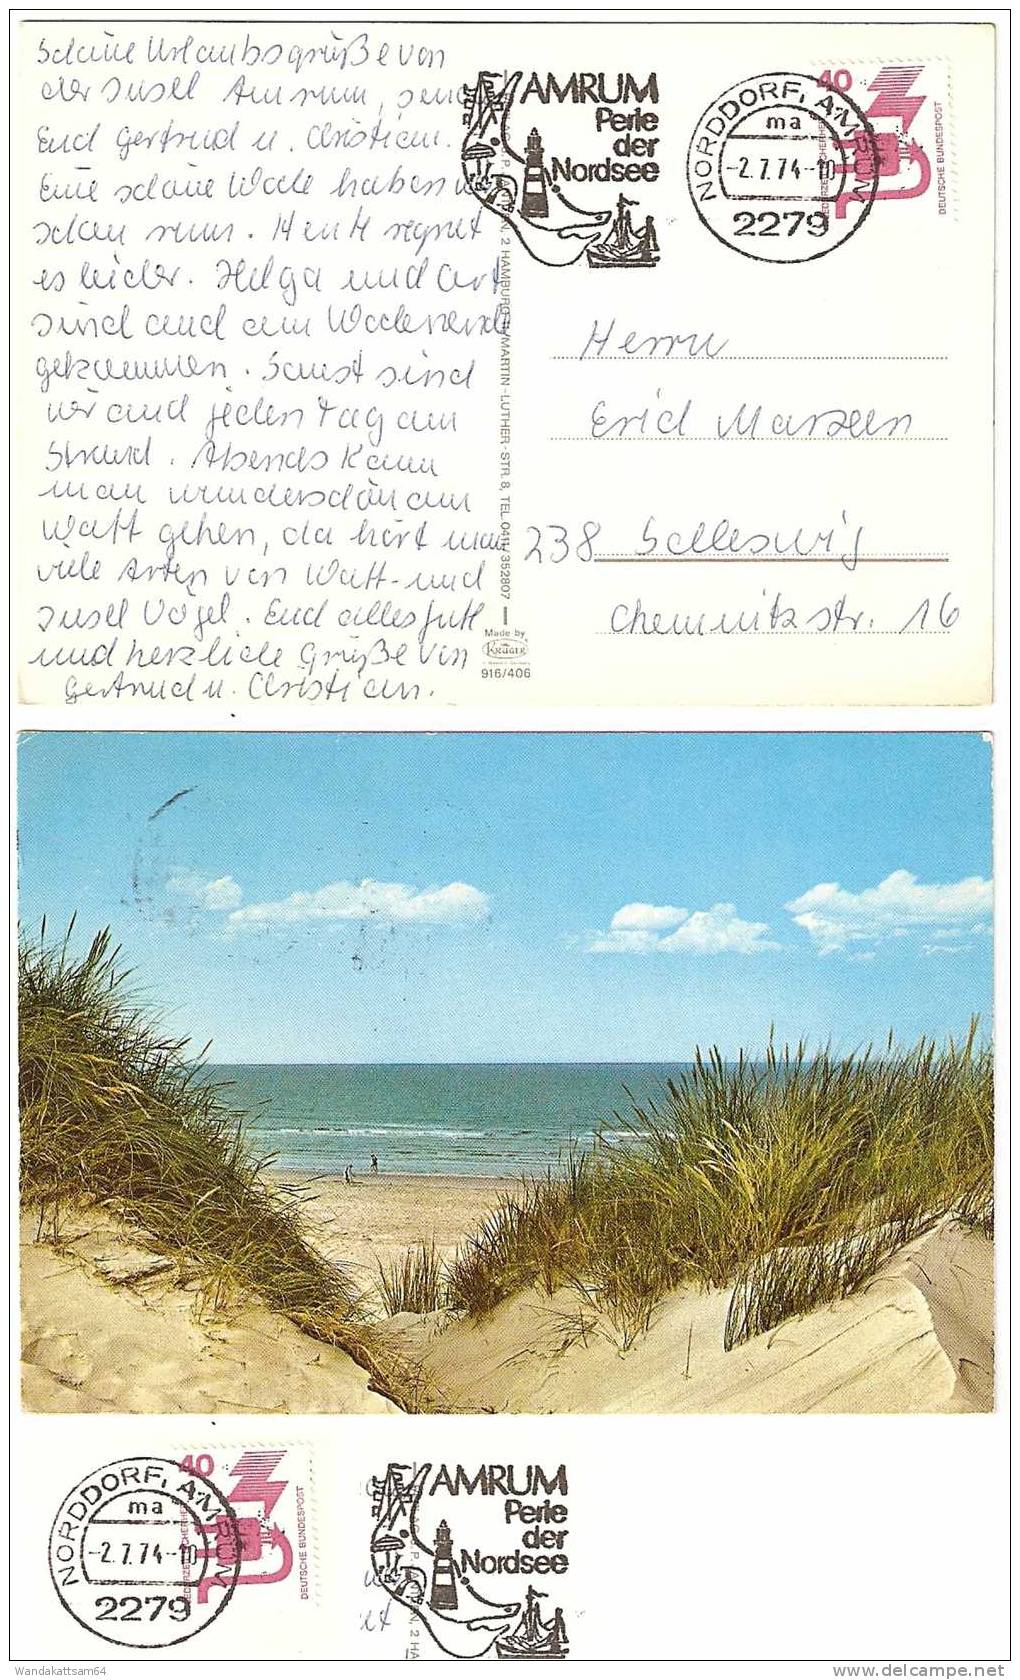 AK 916406 Dünenblick Auf Sandstrand Die Weite Des Meeres Wolken -2.7.74-10 2279 NORDDORF, AMRUM Ma Nach 238 Schleswig - Nordfriesland